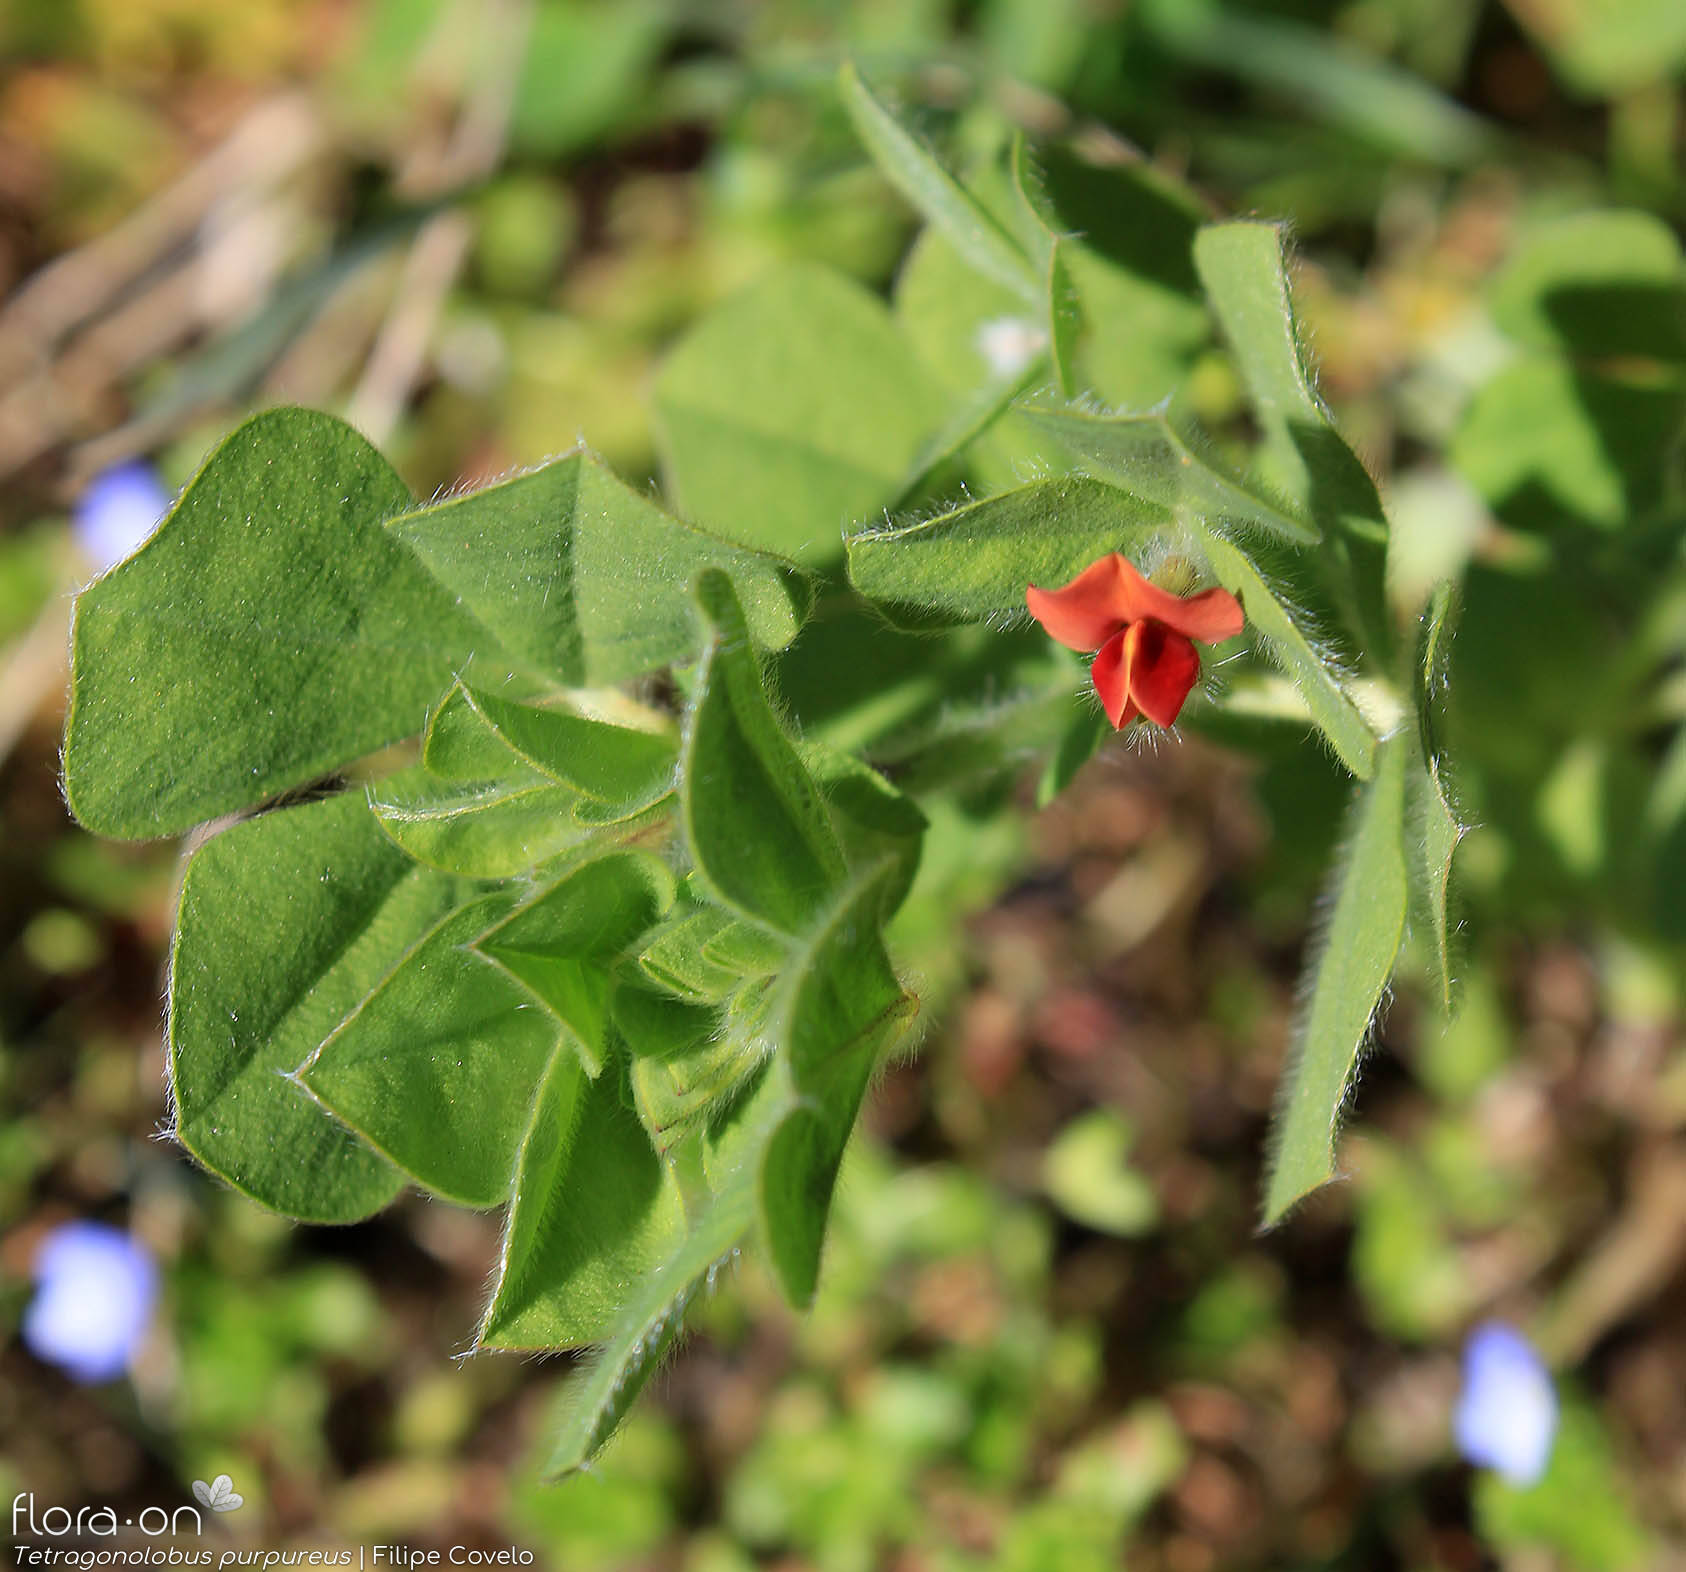 Tetragonolobus purpureus - Flor (geral) | Filipe Covelo; CC BY-NC 4.0